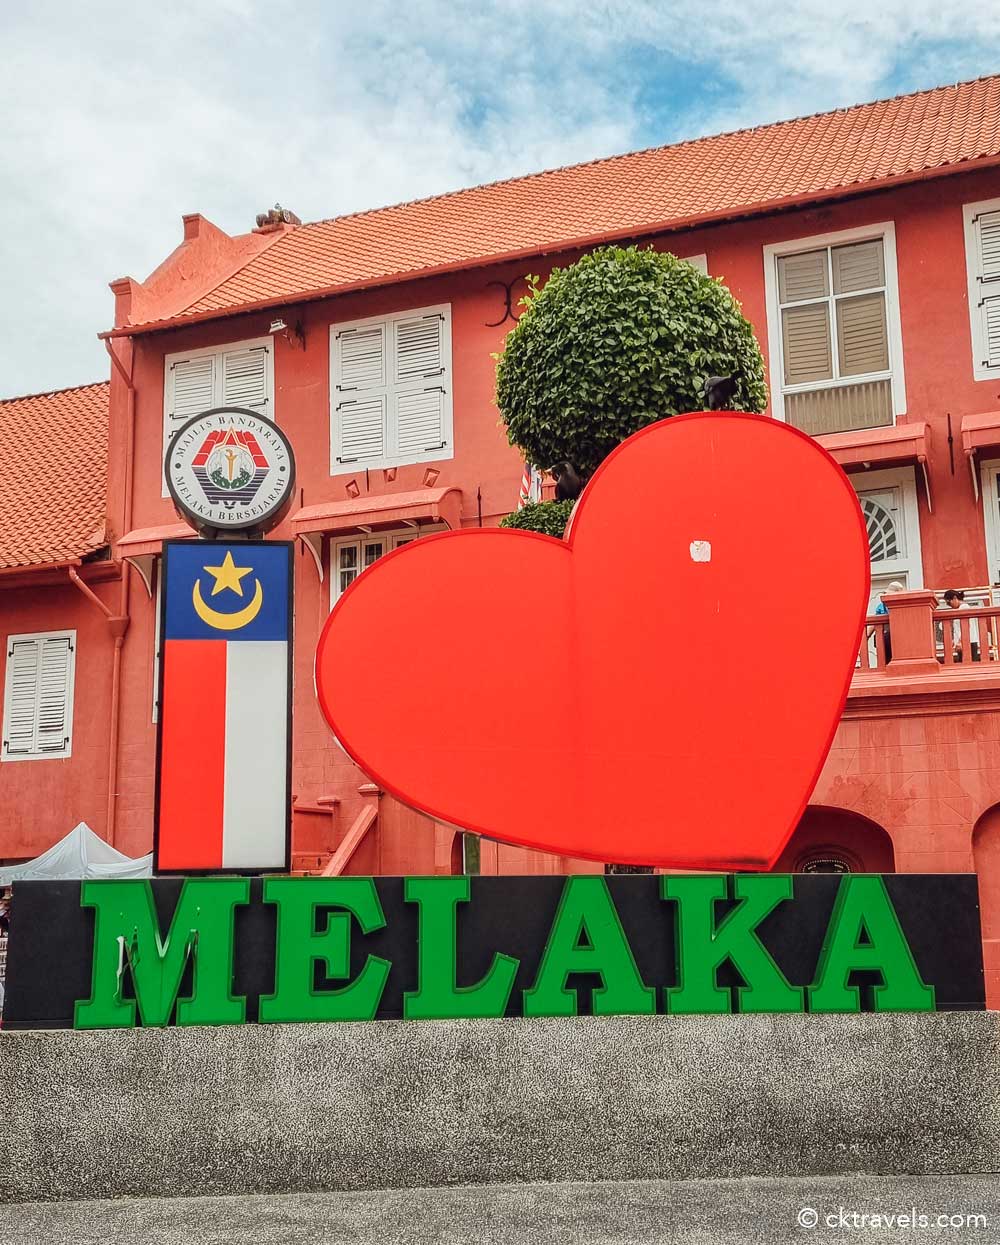 Melaka Red Square / Stadthuys I heart Melaka sign